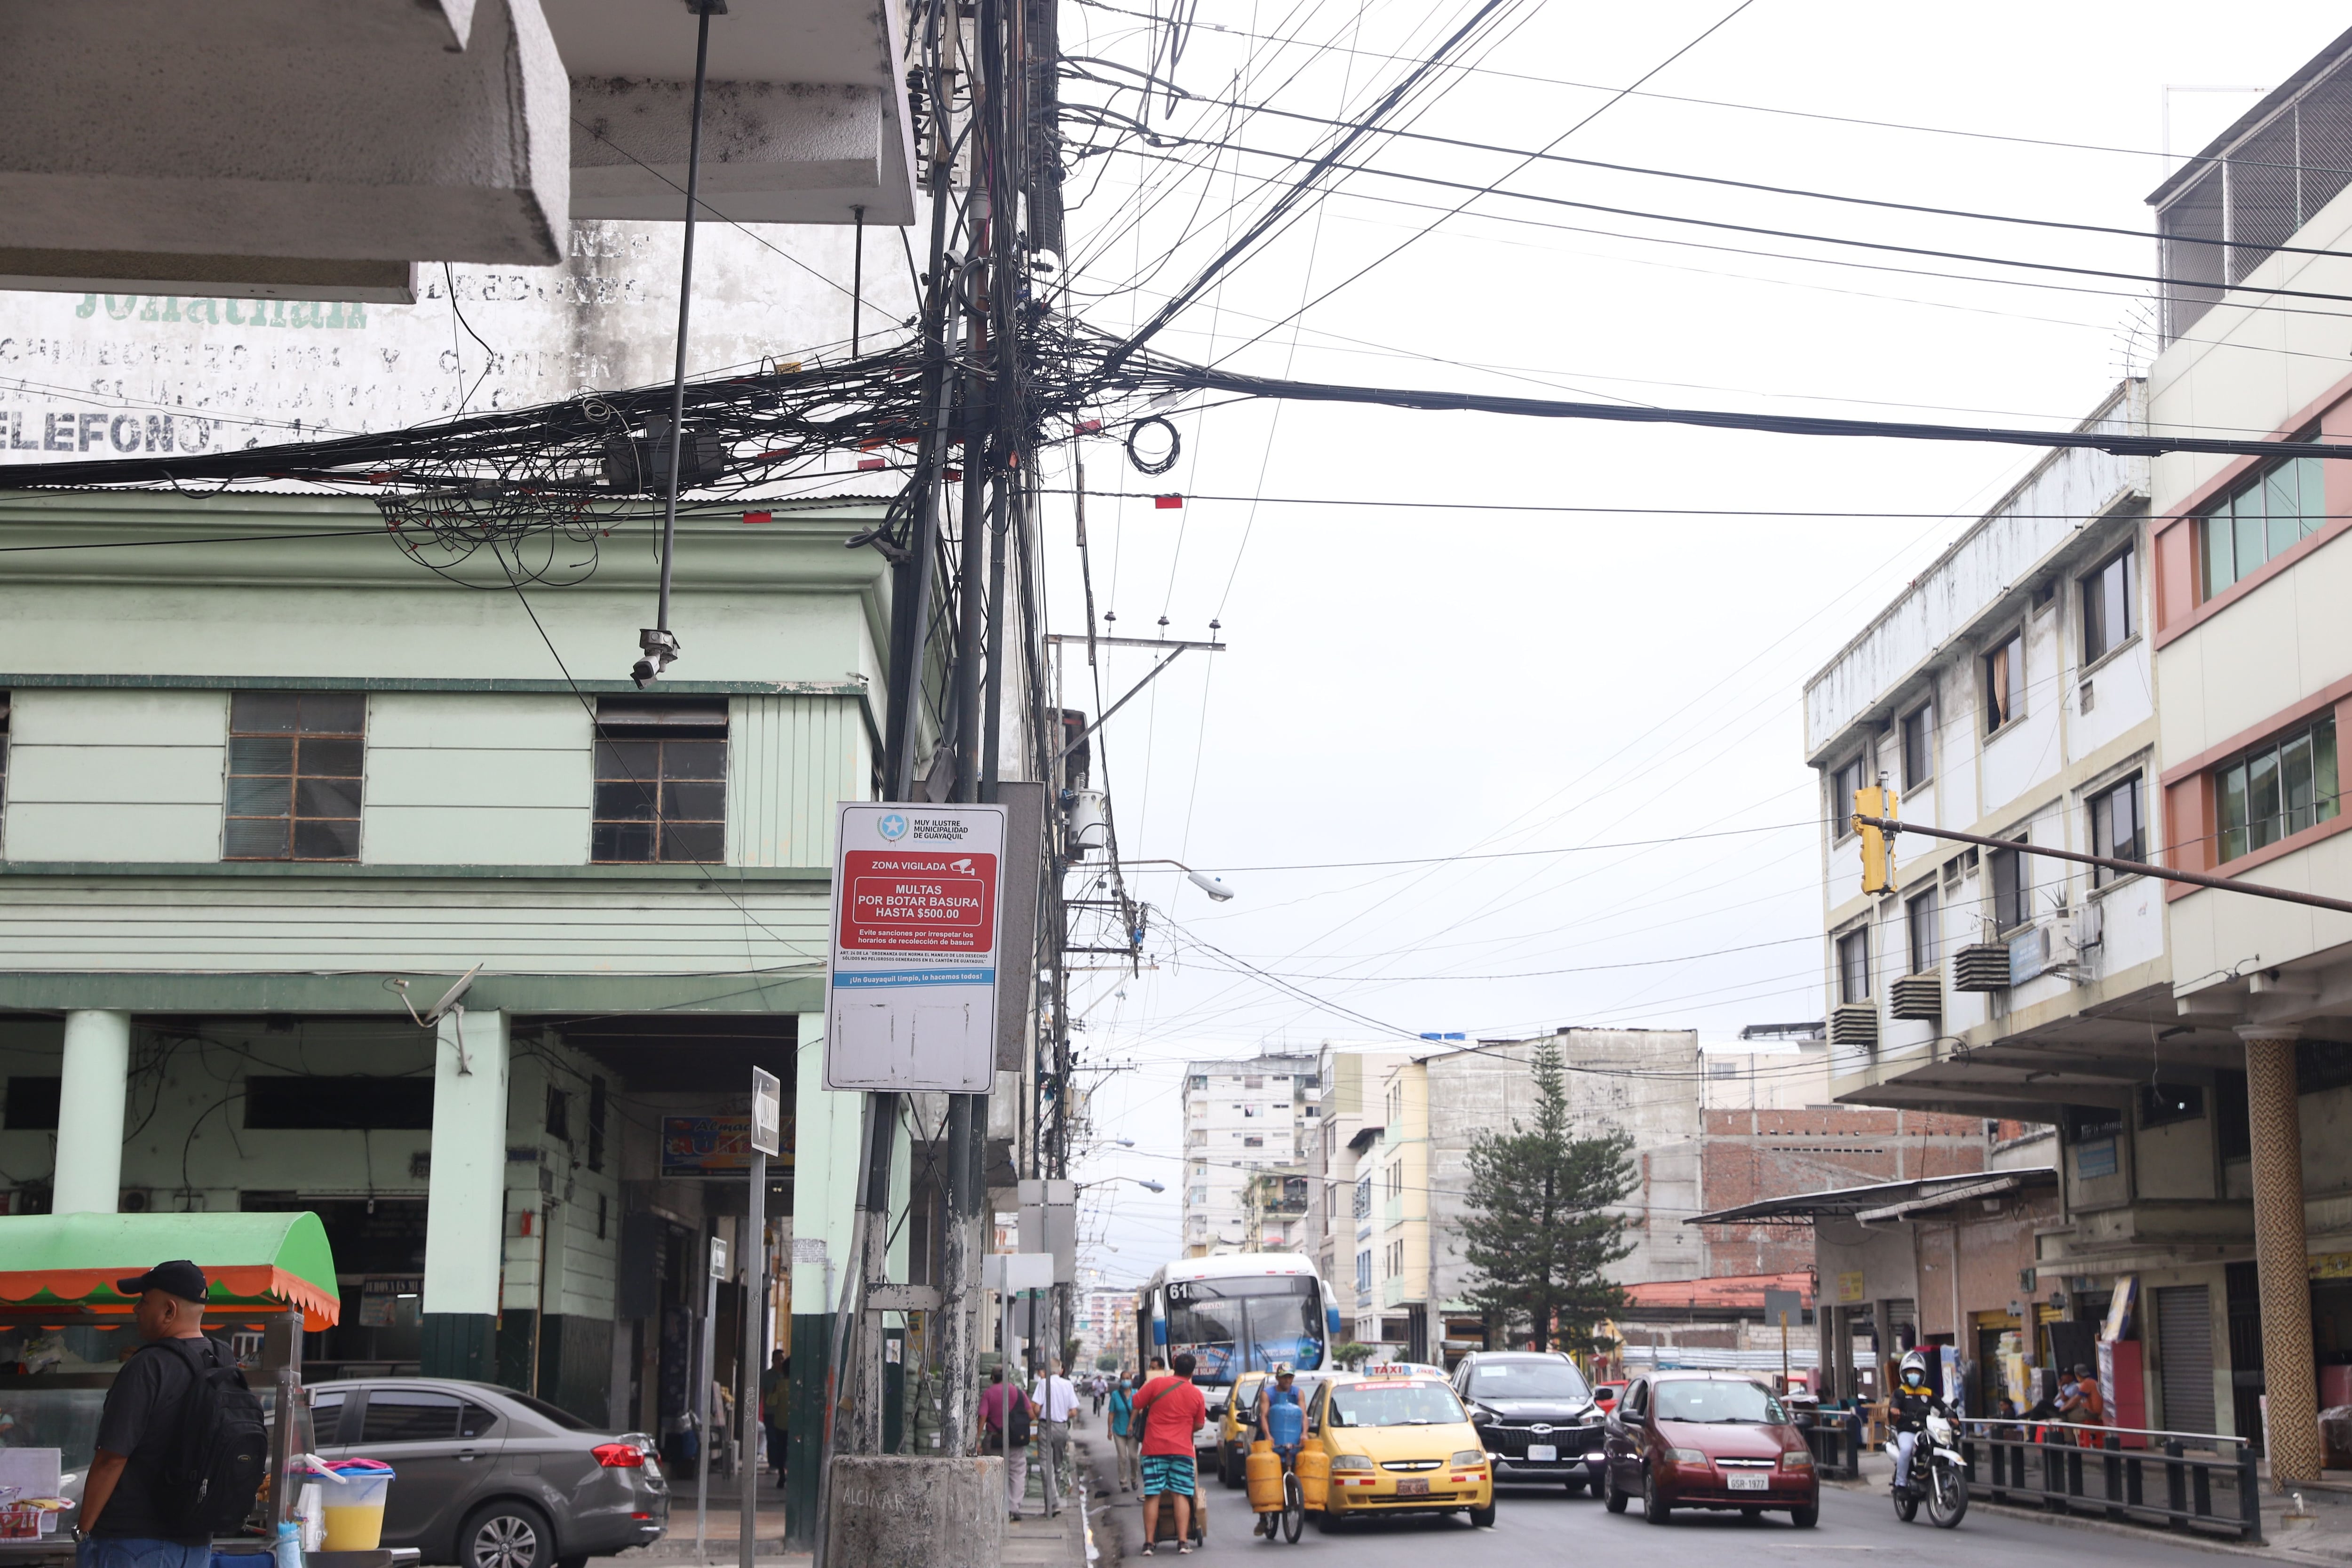 Los ‘tallarines’ formados por cables en exceso persisten en Guayaquil. Solo el 15 % del cableado es subterráneo